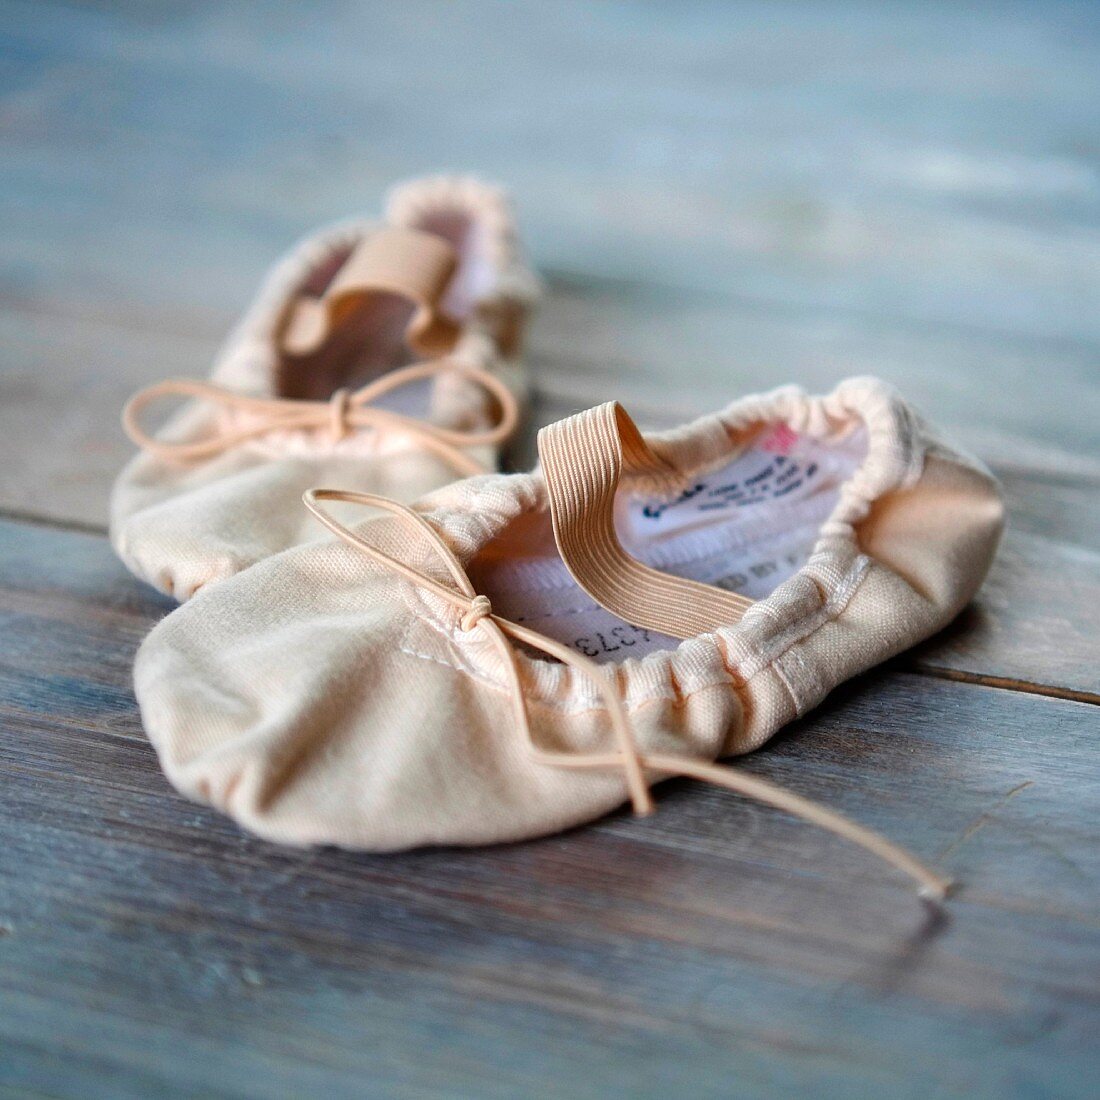 Ballettschläppchen auf Holzboden